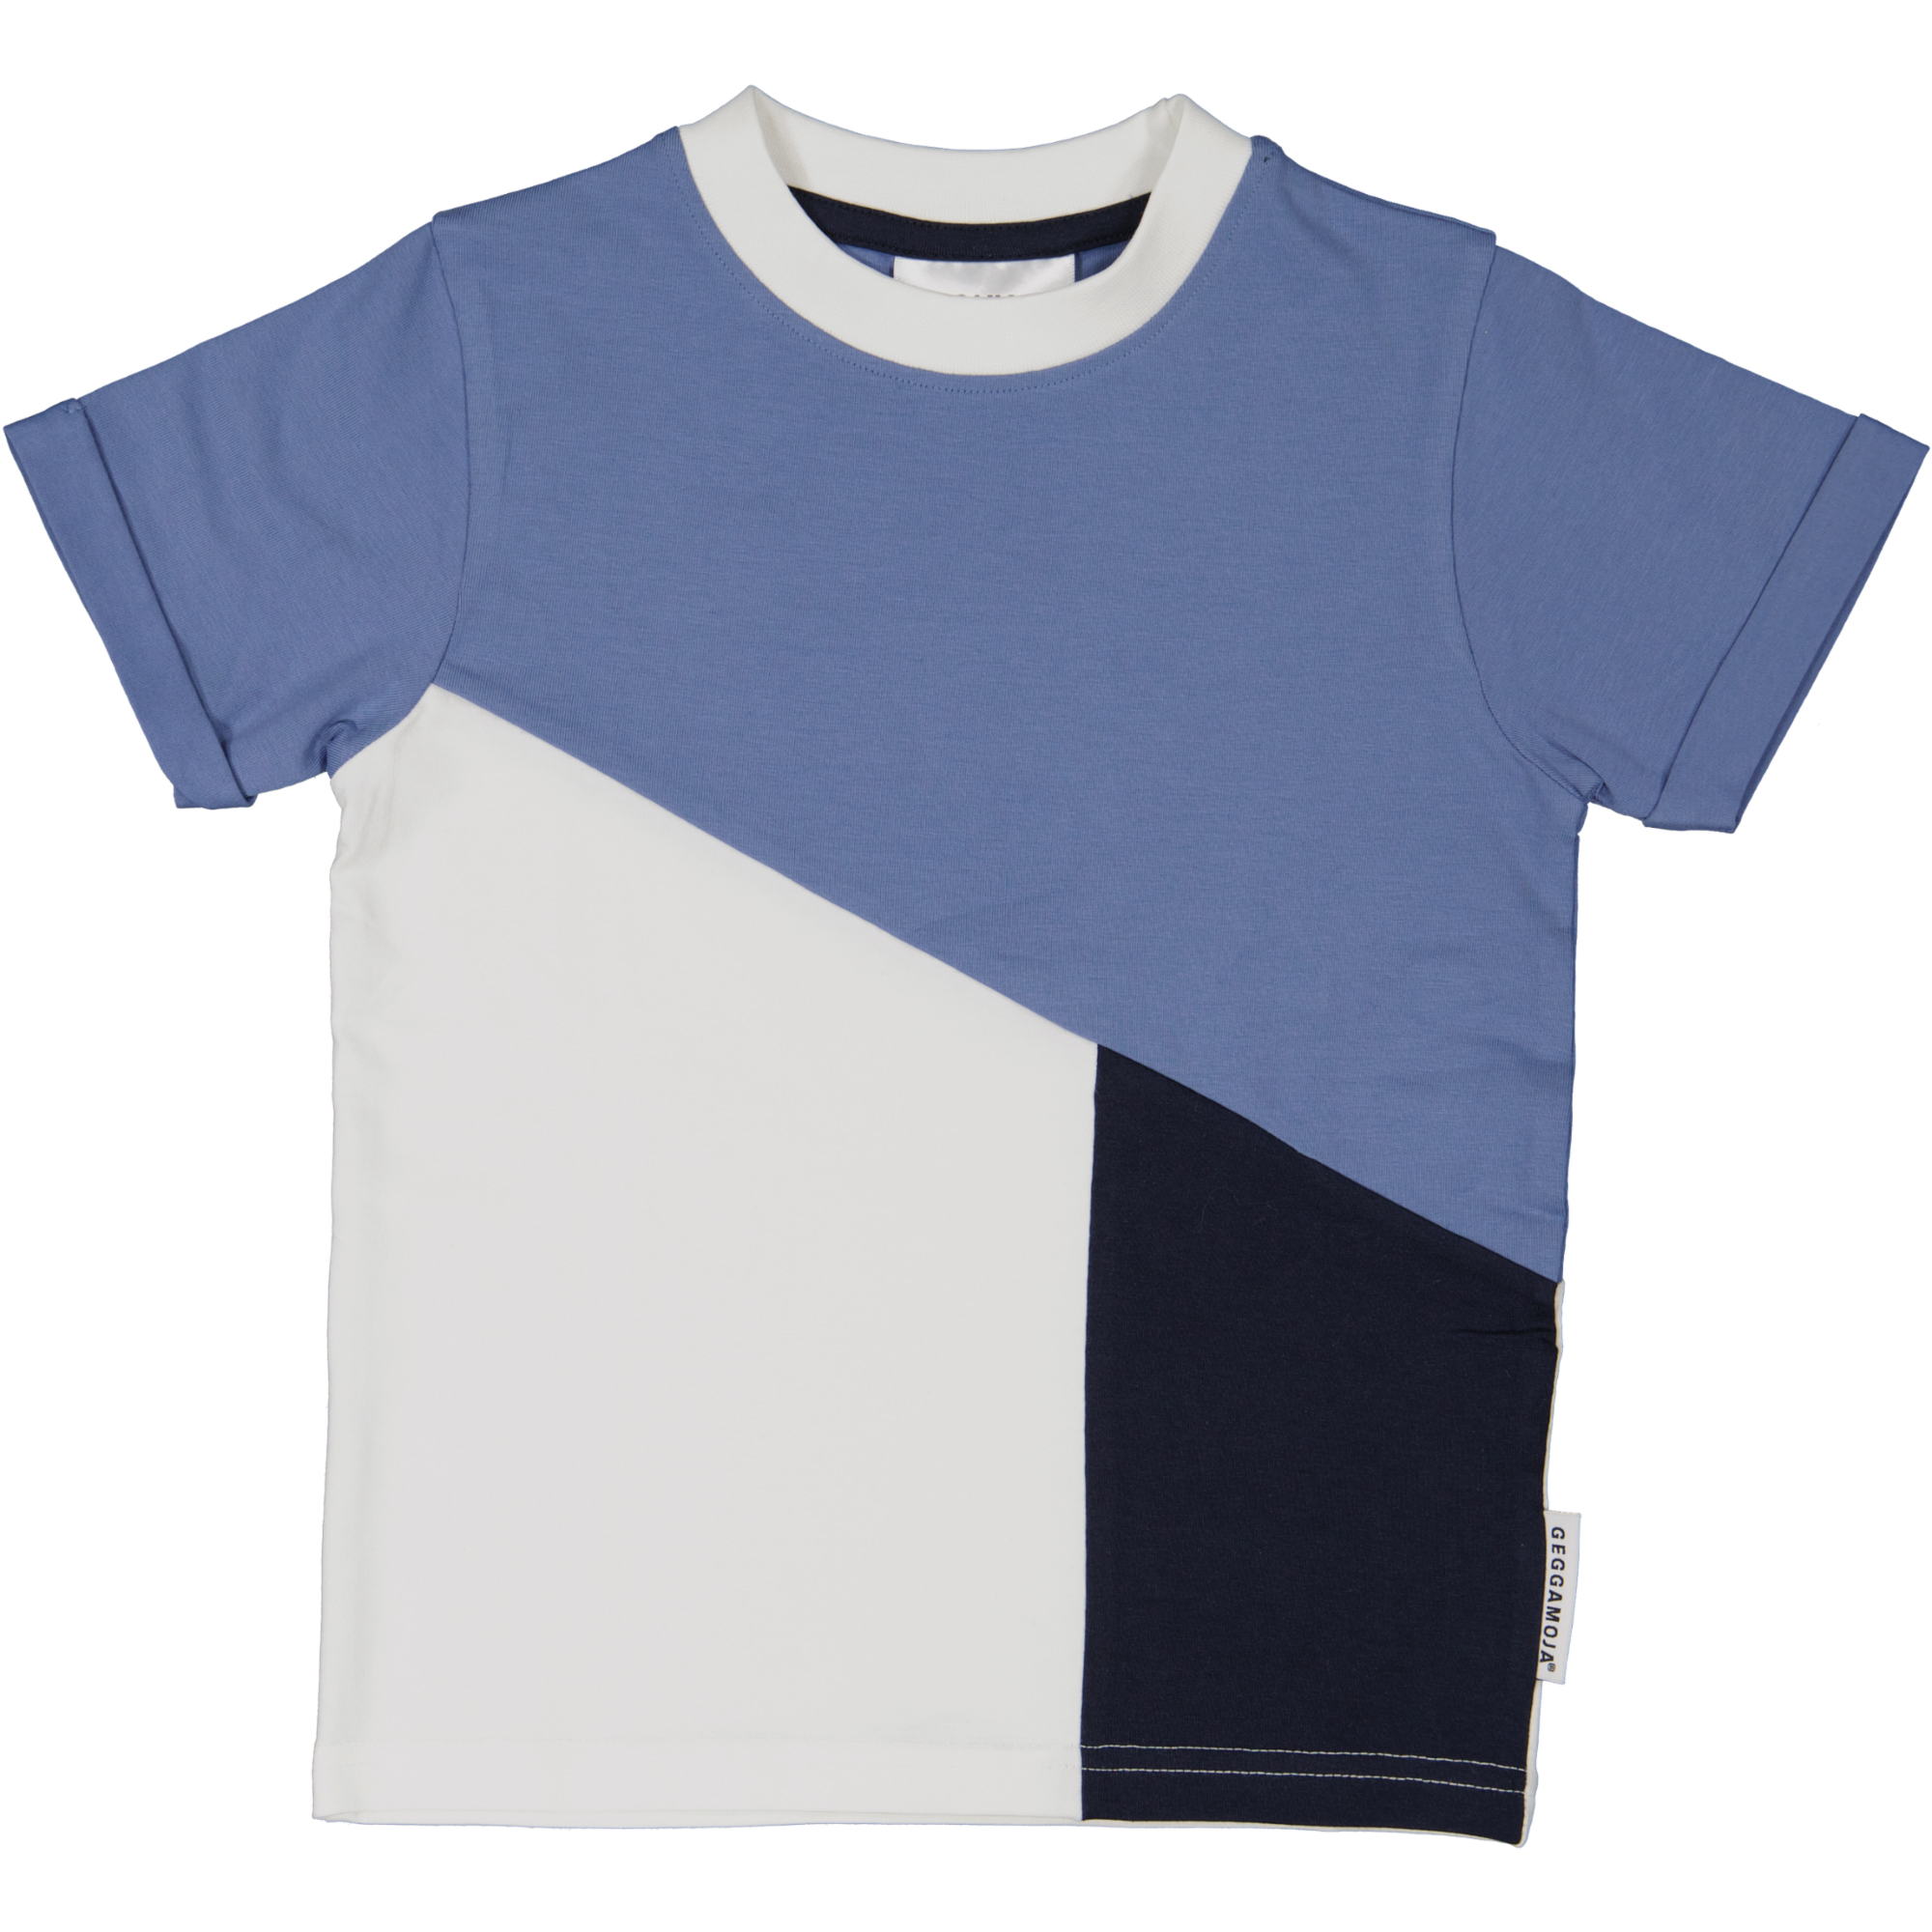 T-shirt Blå/Grå 122/128